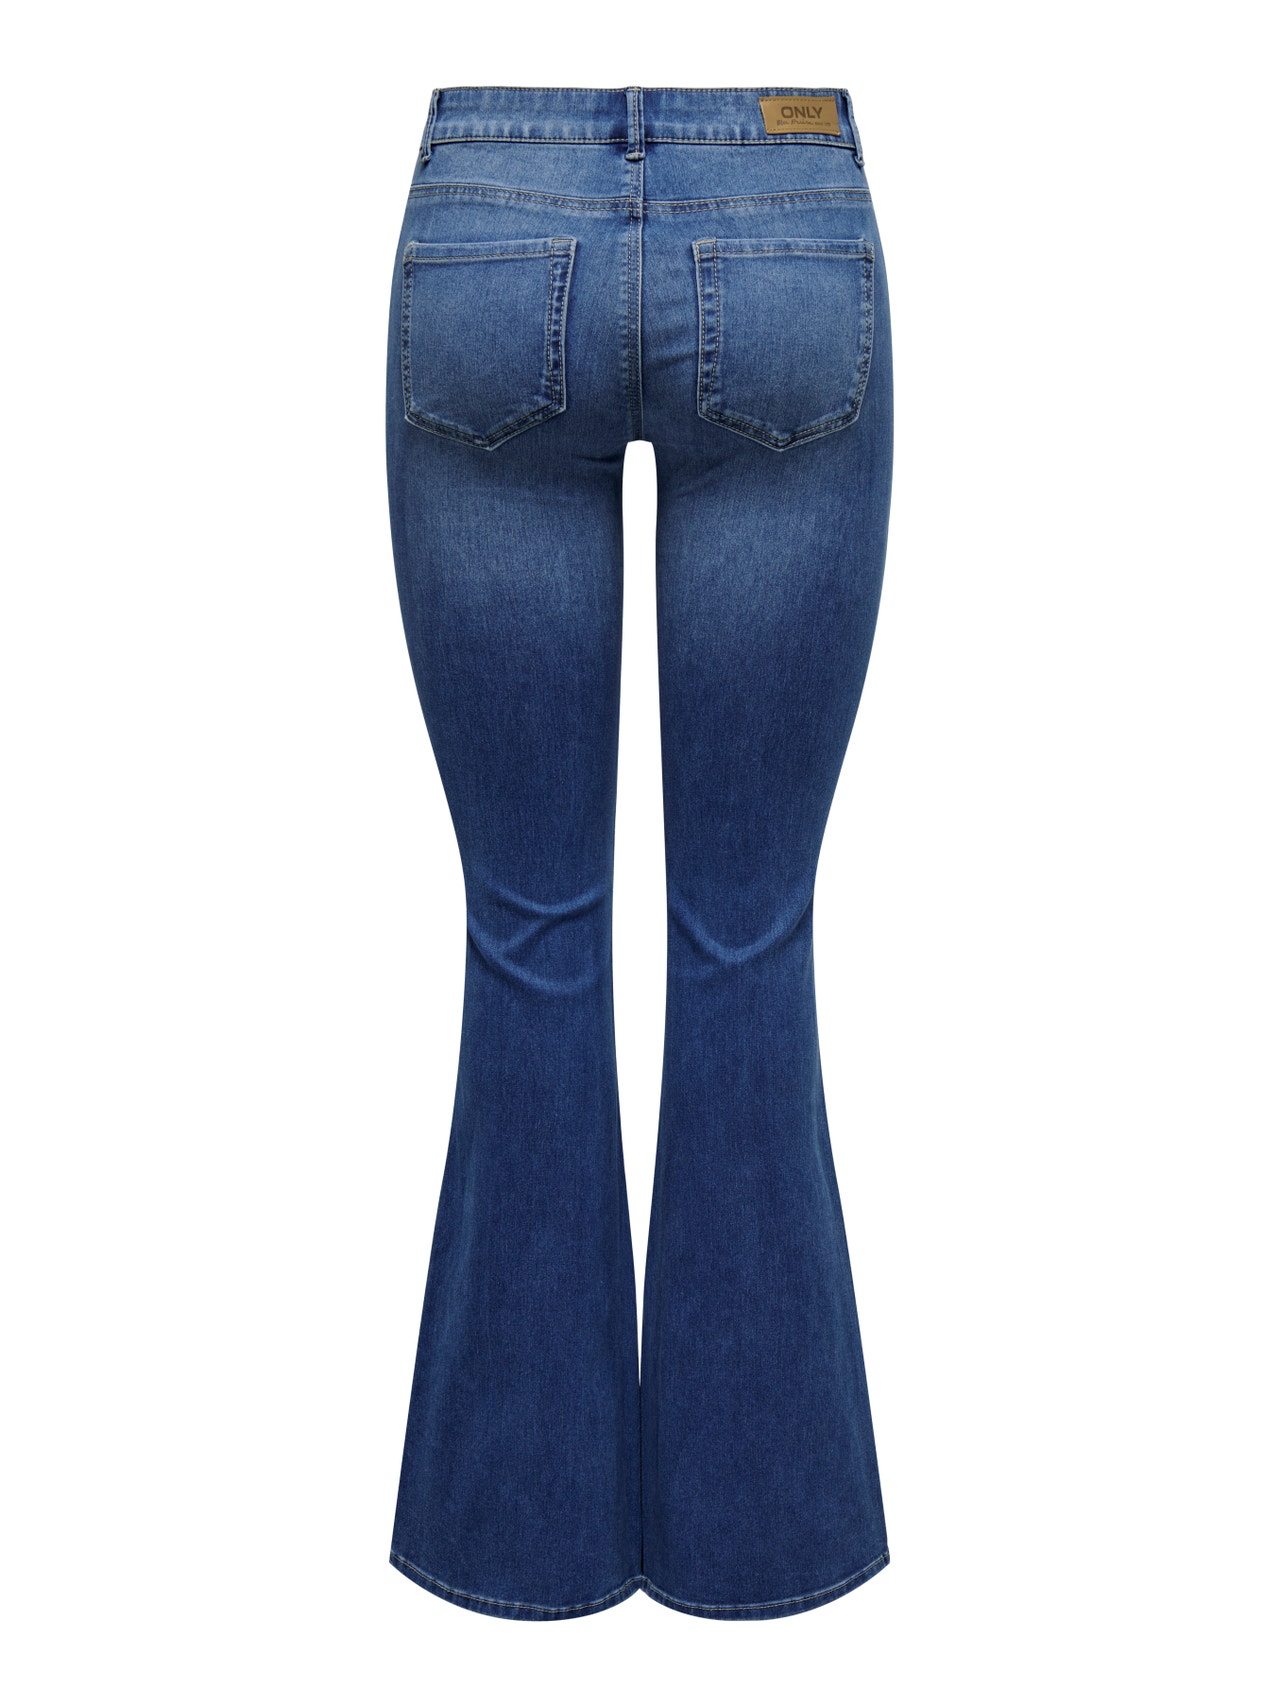 ONLY ONLReese Regular Waist Flared Jeans -Light Medium Blue Denim - 15309845